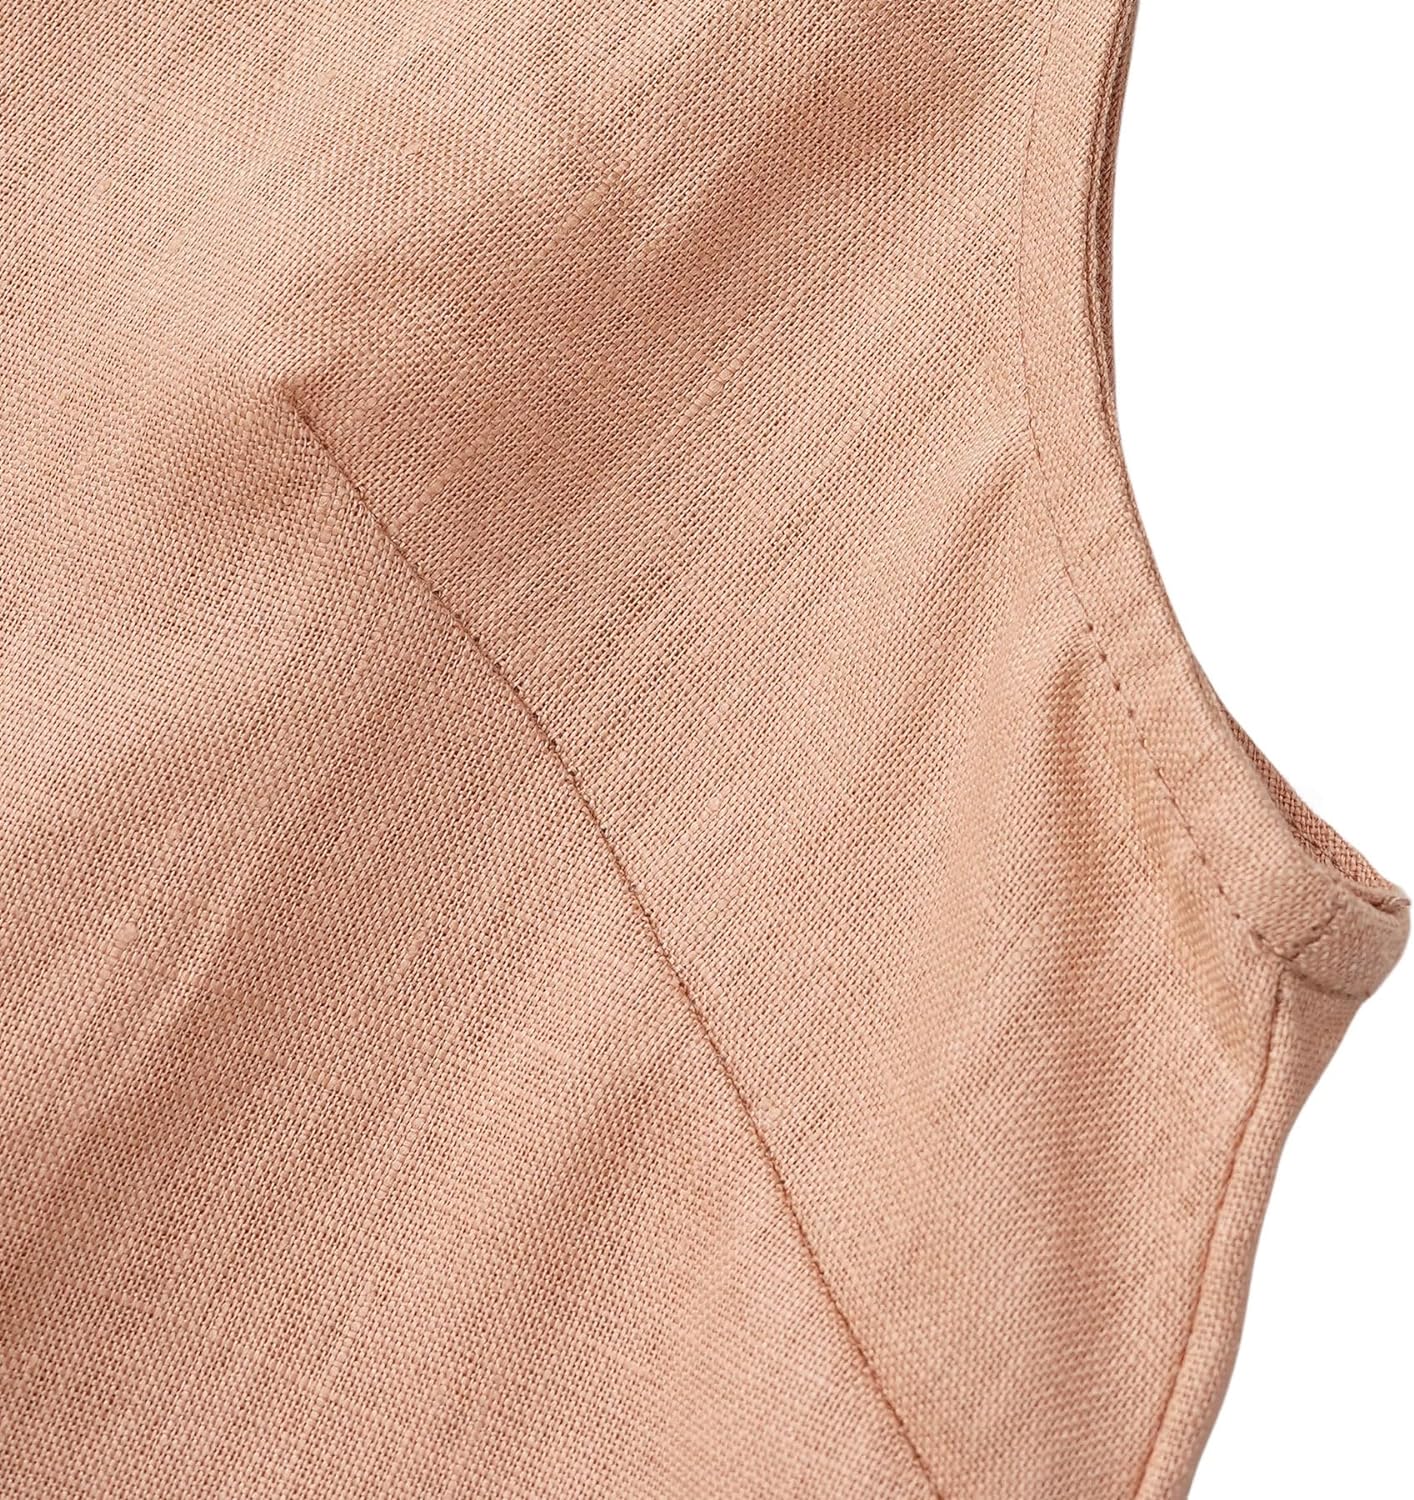 NTG Fad Women's 100% Linen Summer Sleeveless Button-Down Tops Slight Crop Vest